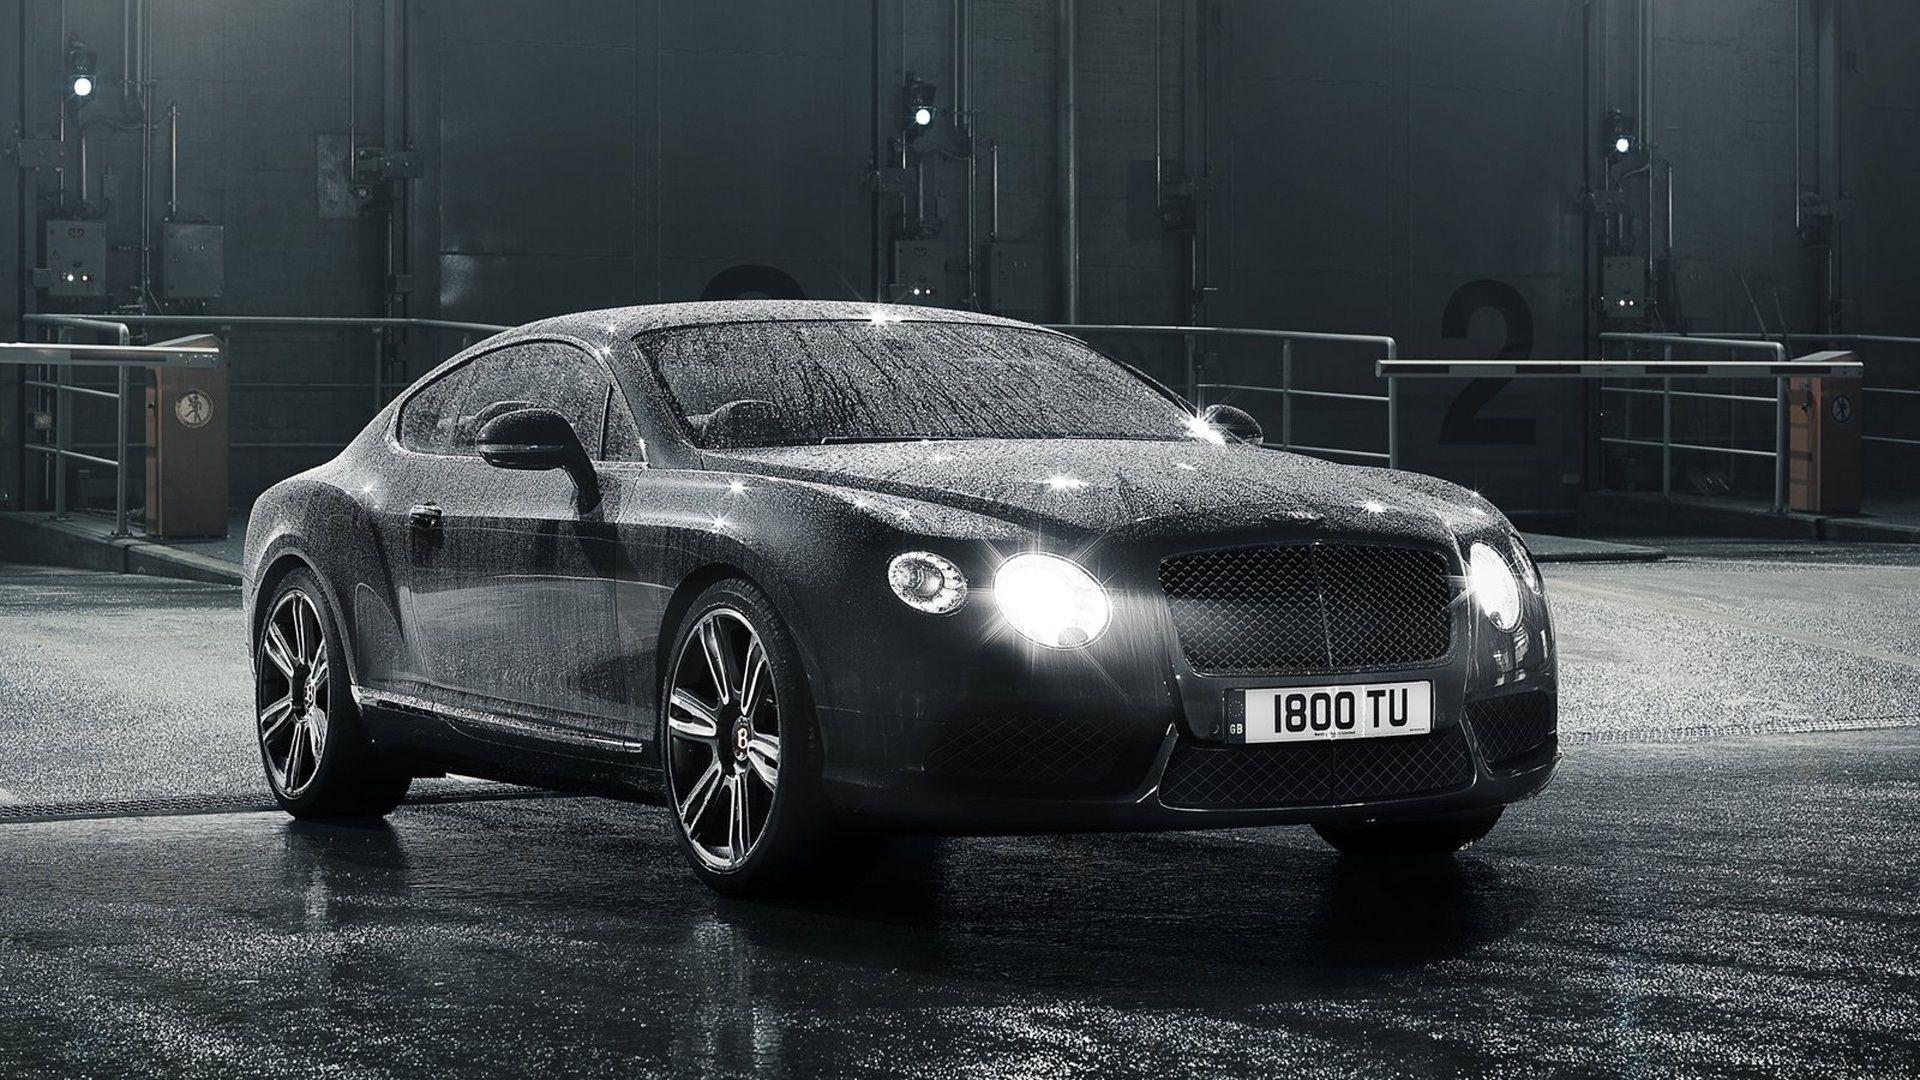 Hình nền 1920x1080 Bentley Continental GT màu đen, sau mưa, giọt nước 1920x1080 Hình ảnh Full HD 2K, Hình ảnh